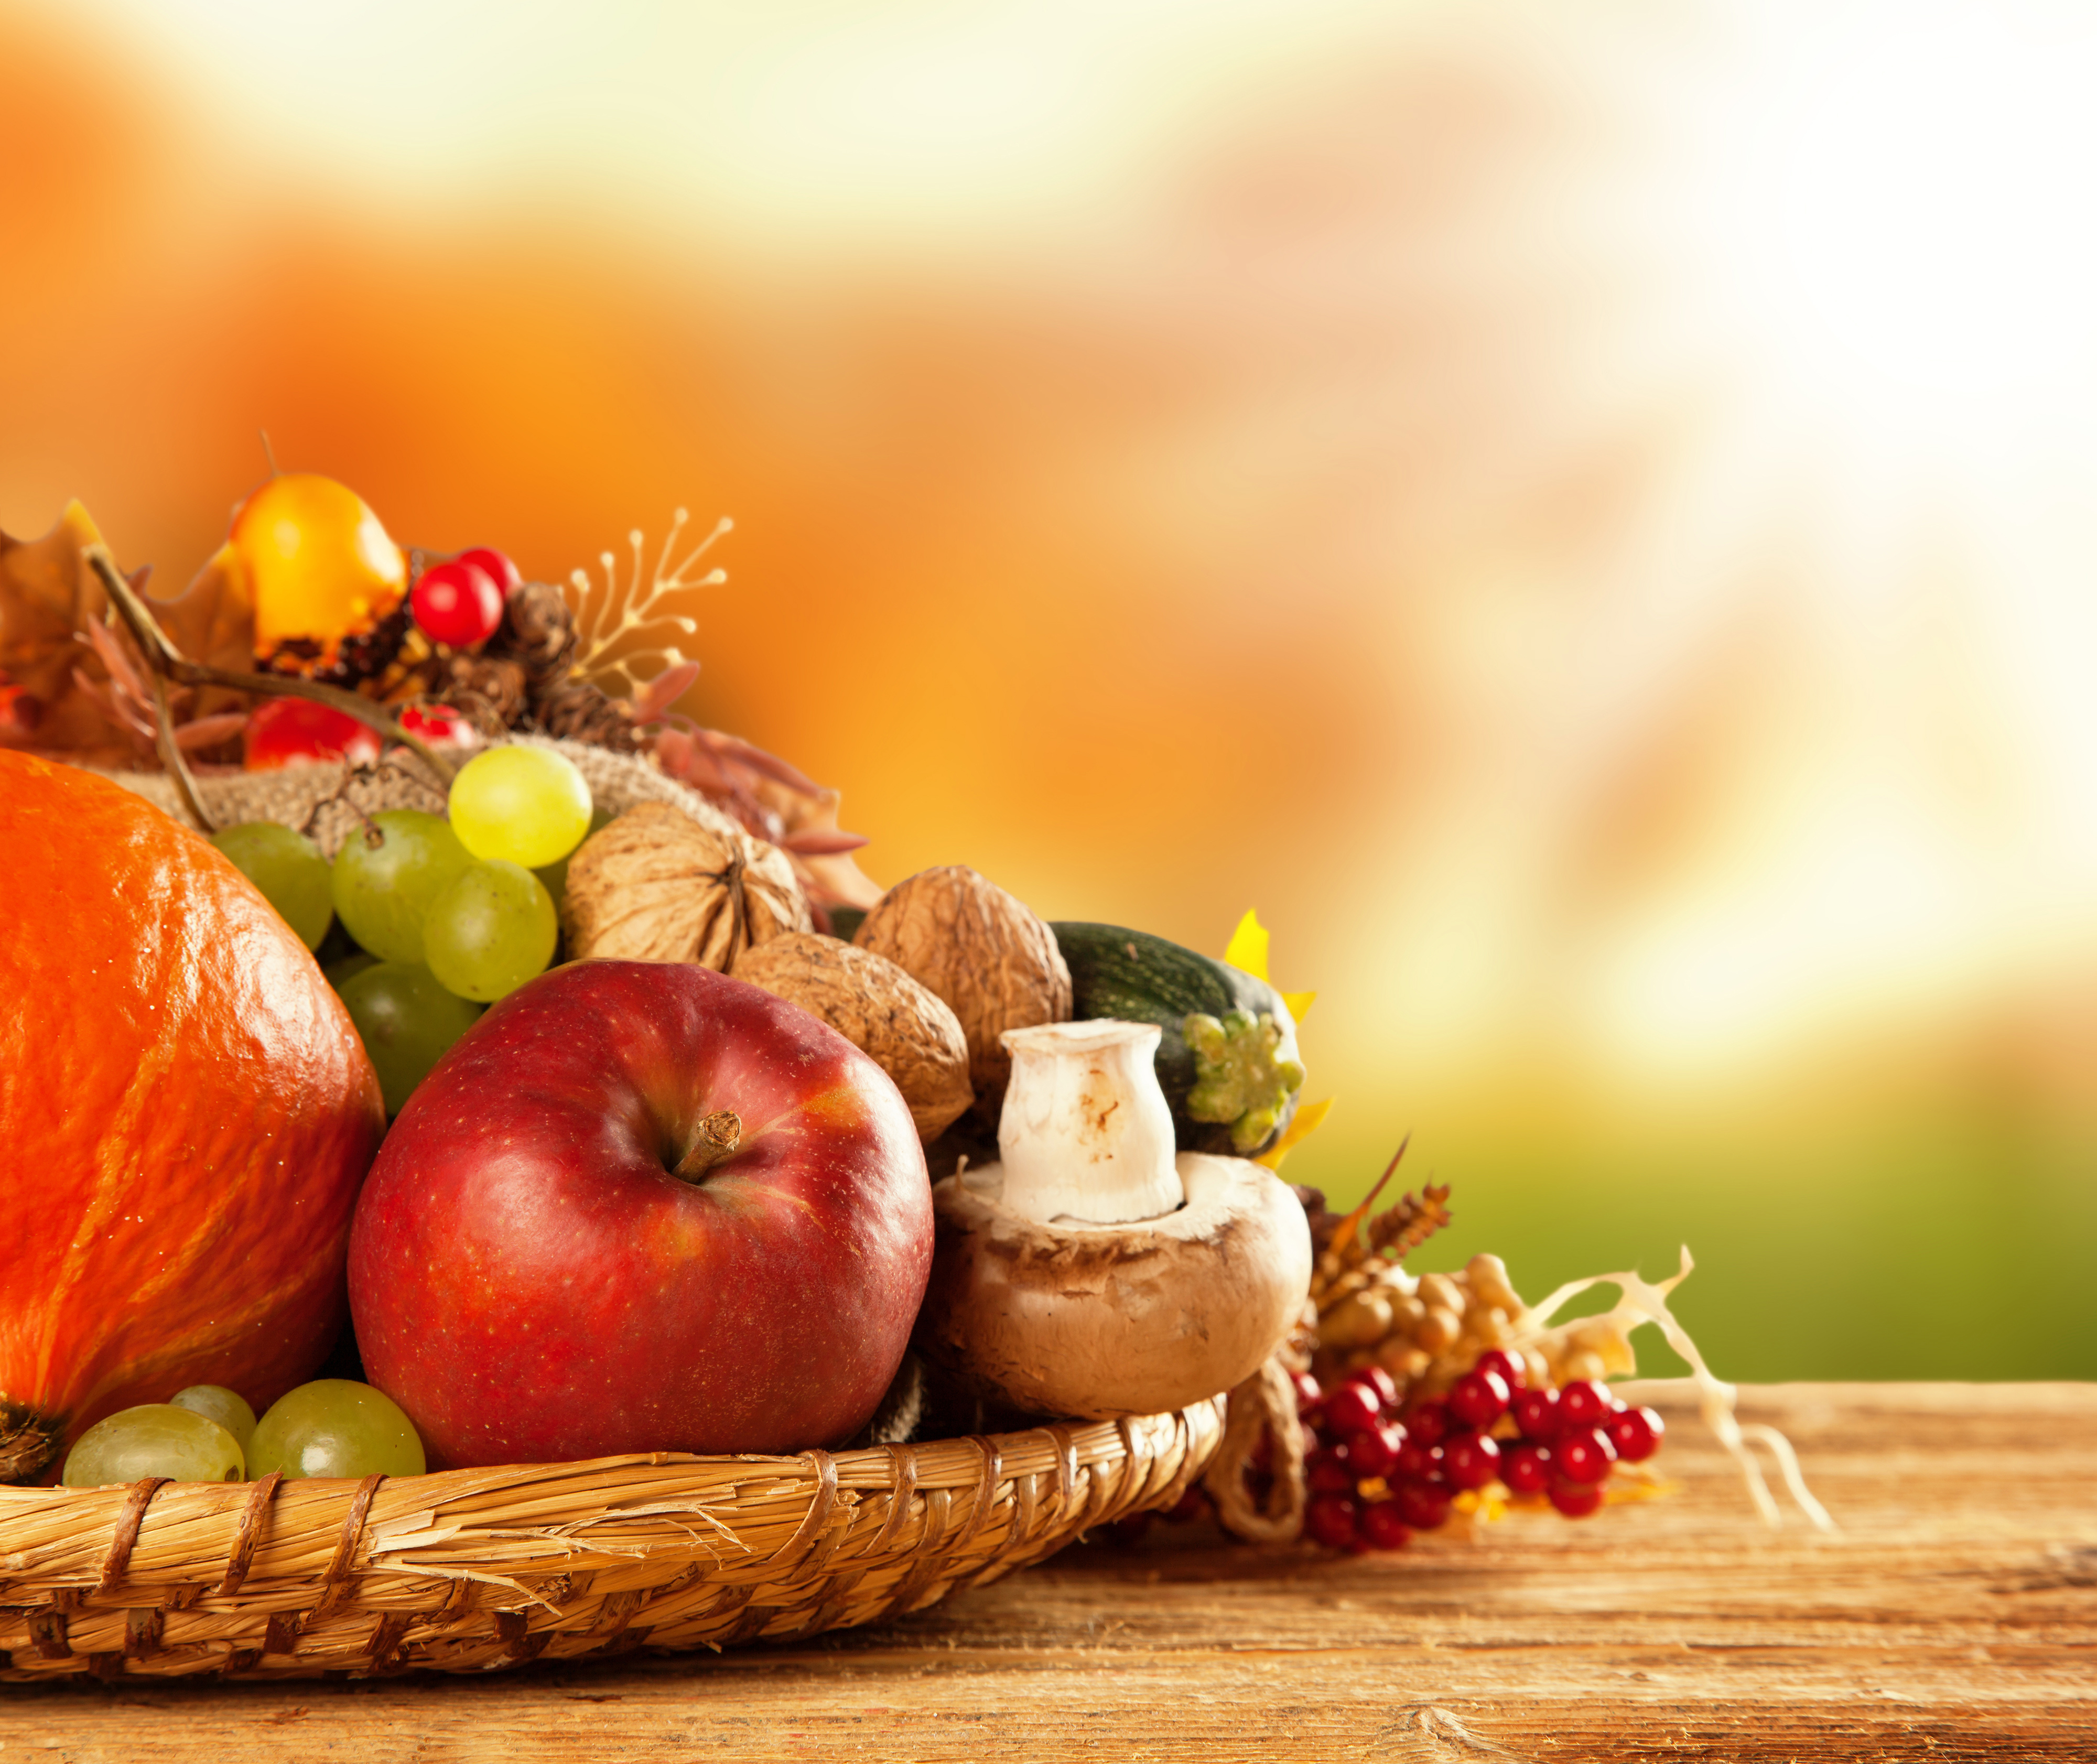 Afbeeldingsresultaat voor autumn fruit and vegetables